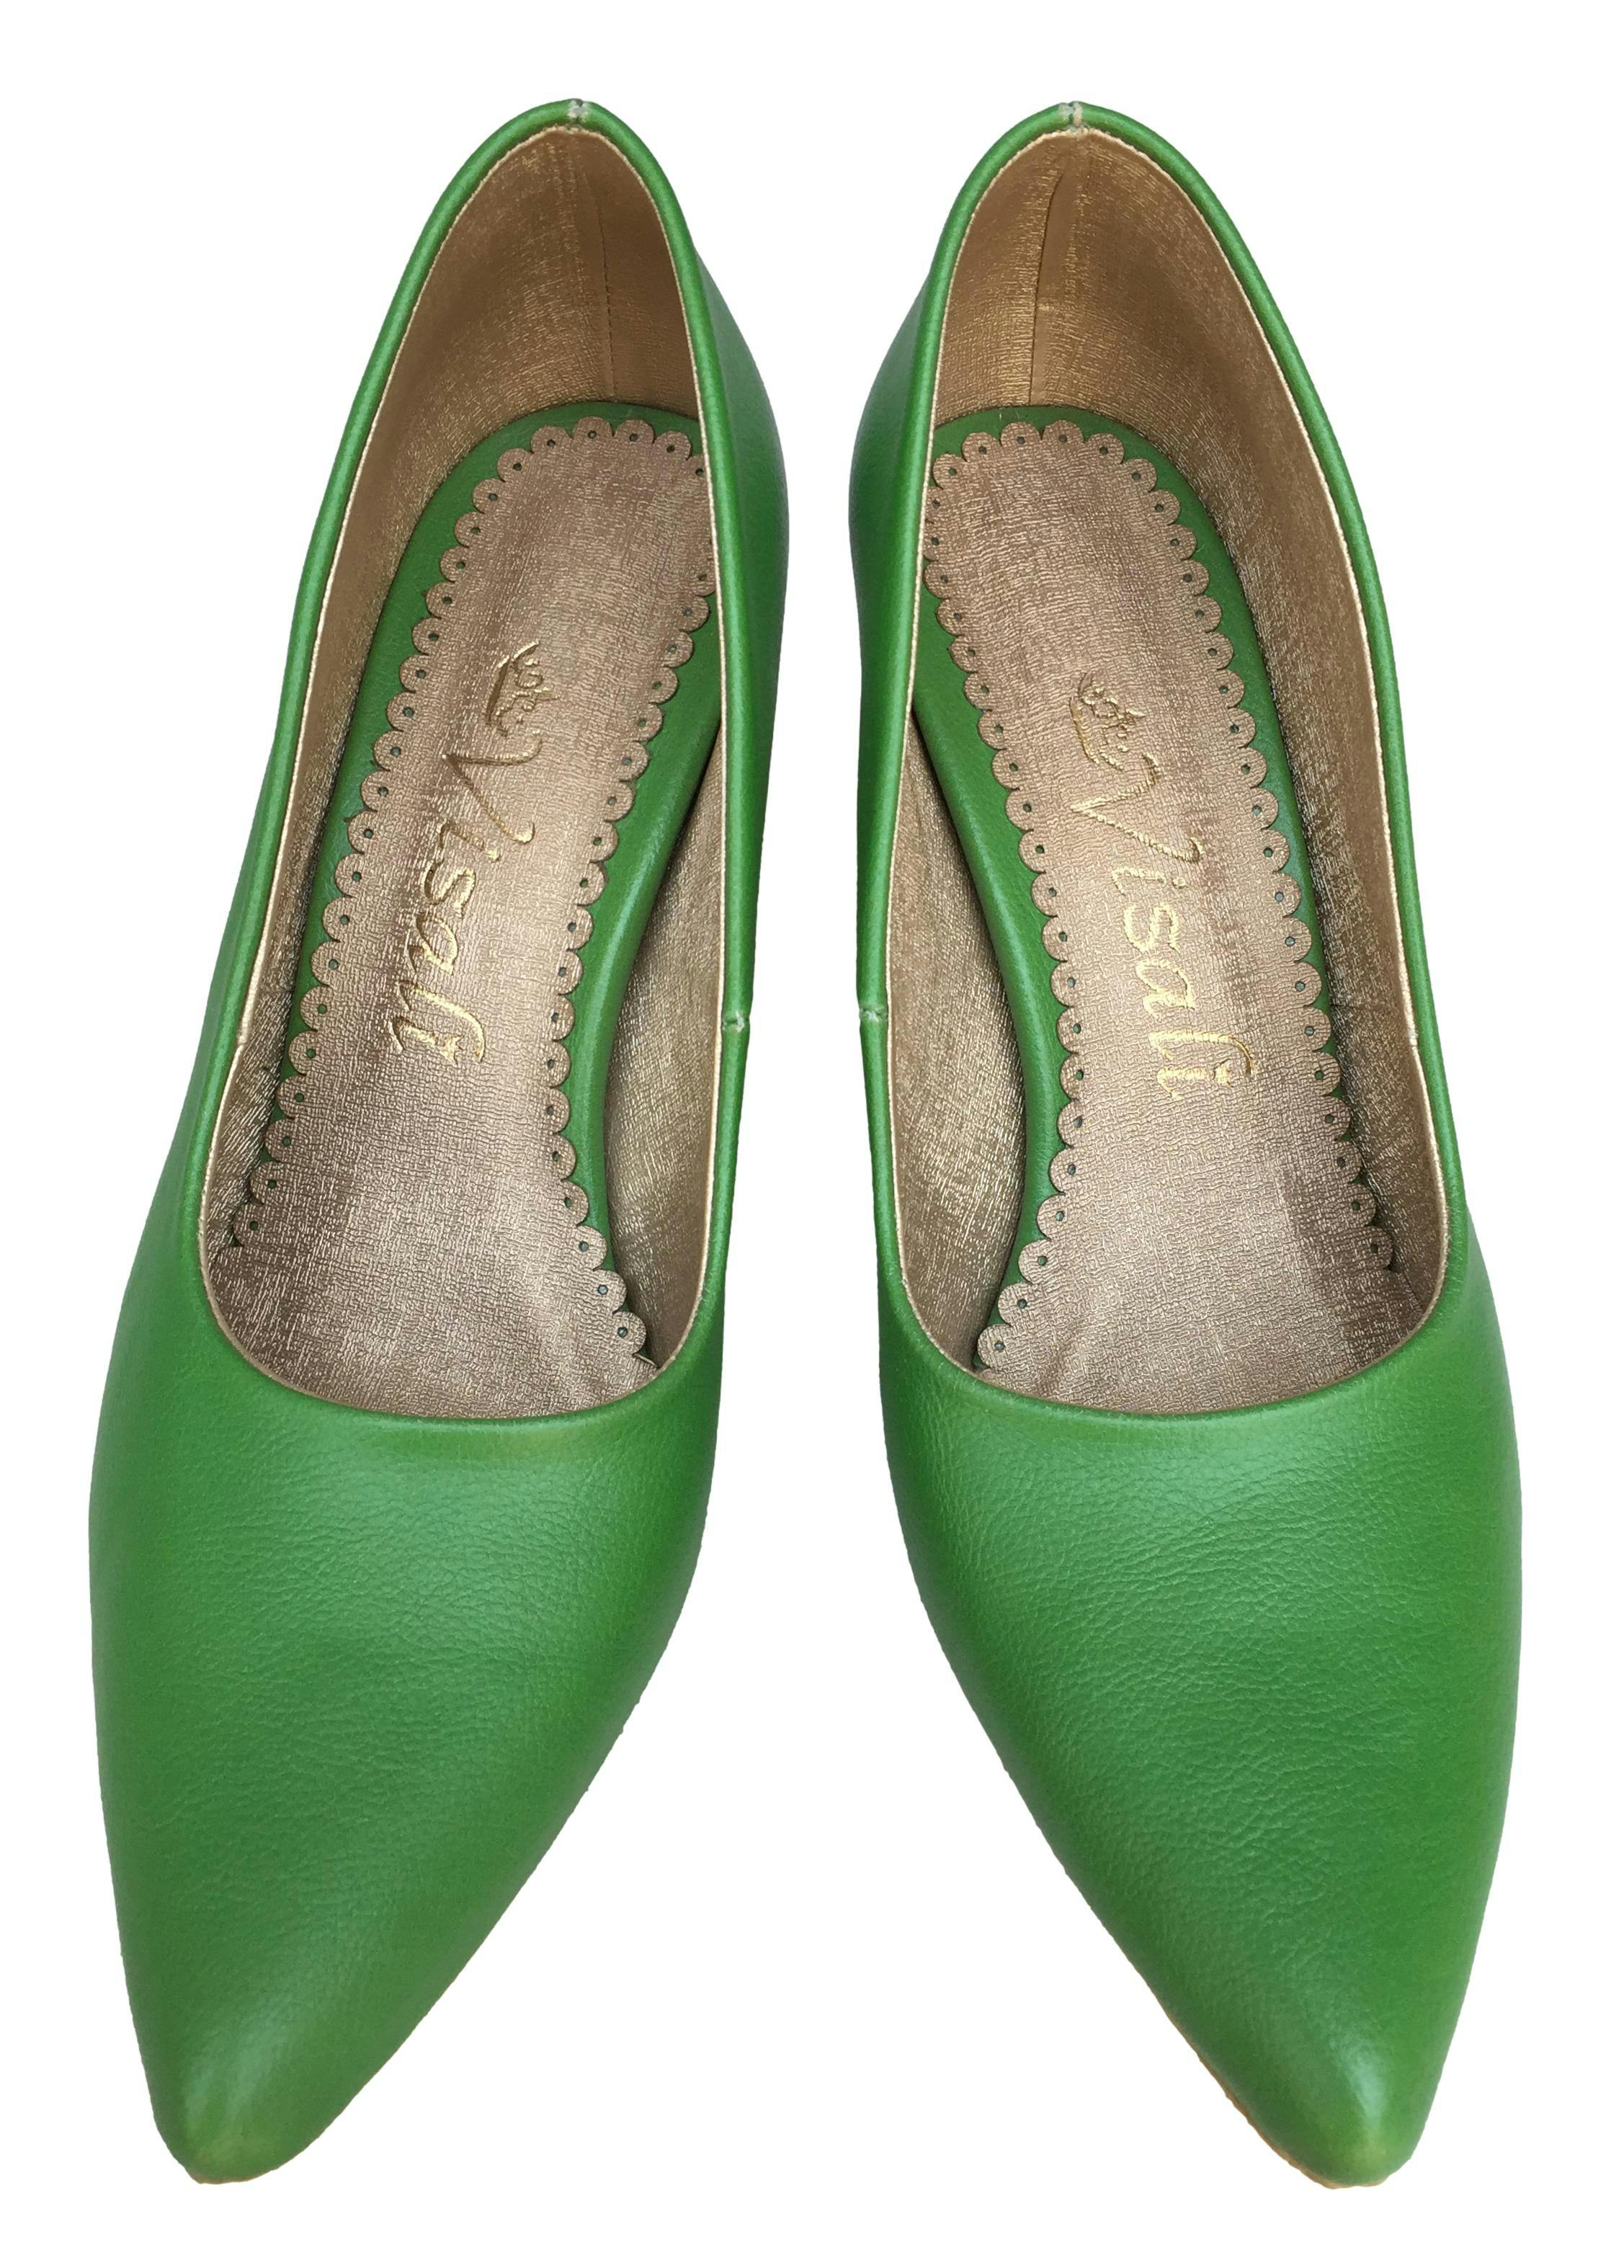 Zapatos Visali de cuero verde, modelo en punta, taco 7cm. Como nuevos.